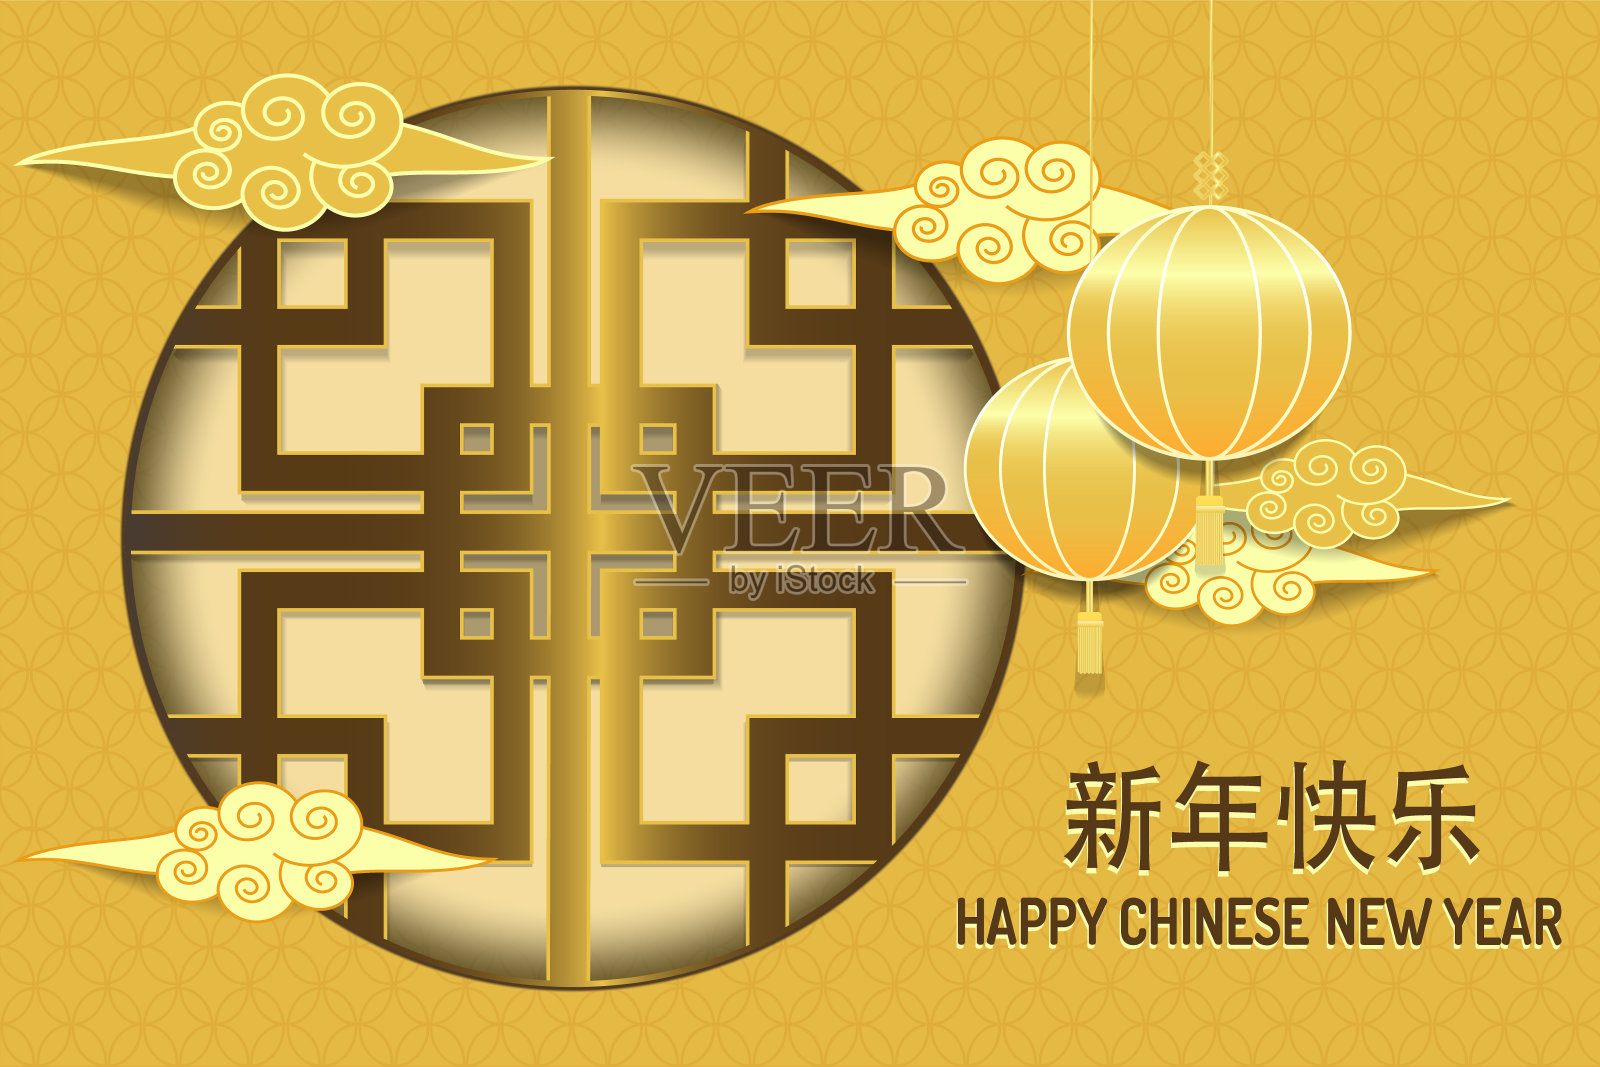 春节快乐。亚洲传统的灯笼和装饰上挂有中国汉字。矢量图设计模板素材